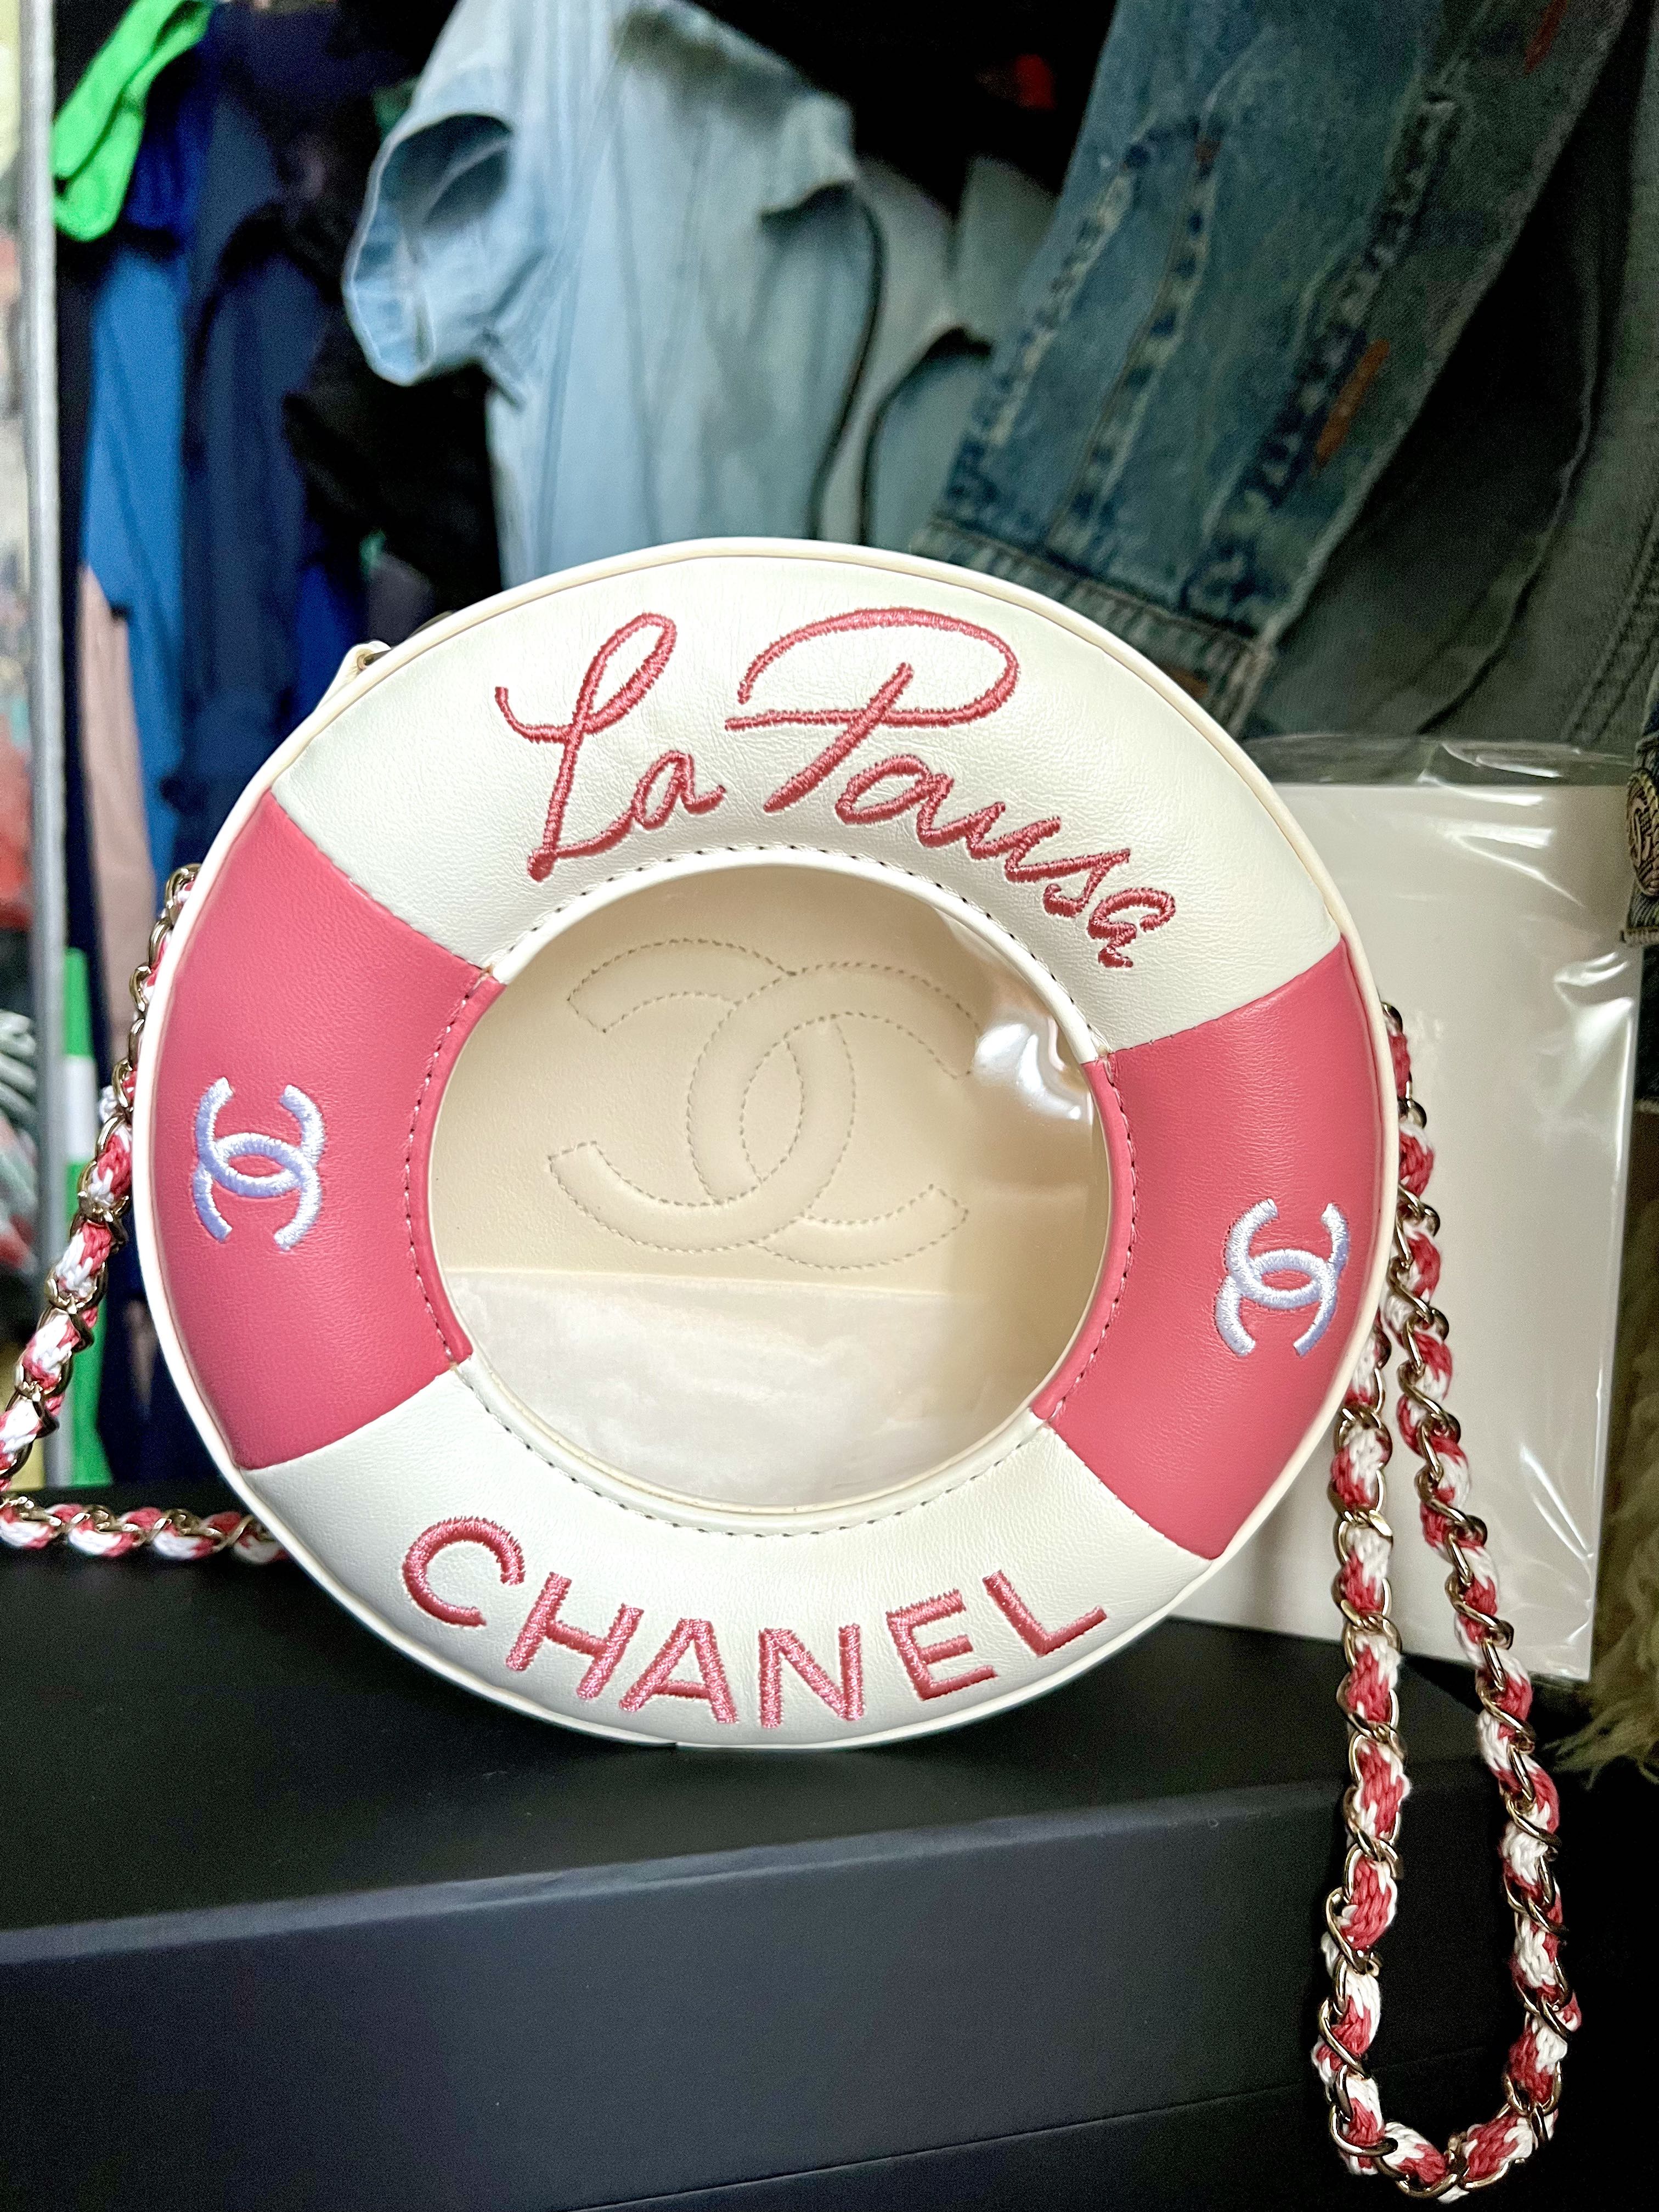 Resort 2019 La Pausa Lifesaver Bag, Authentic & Vintage